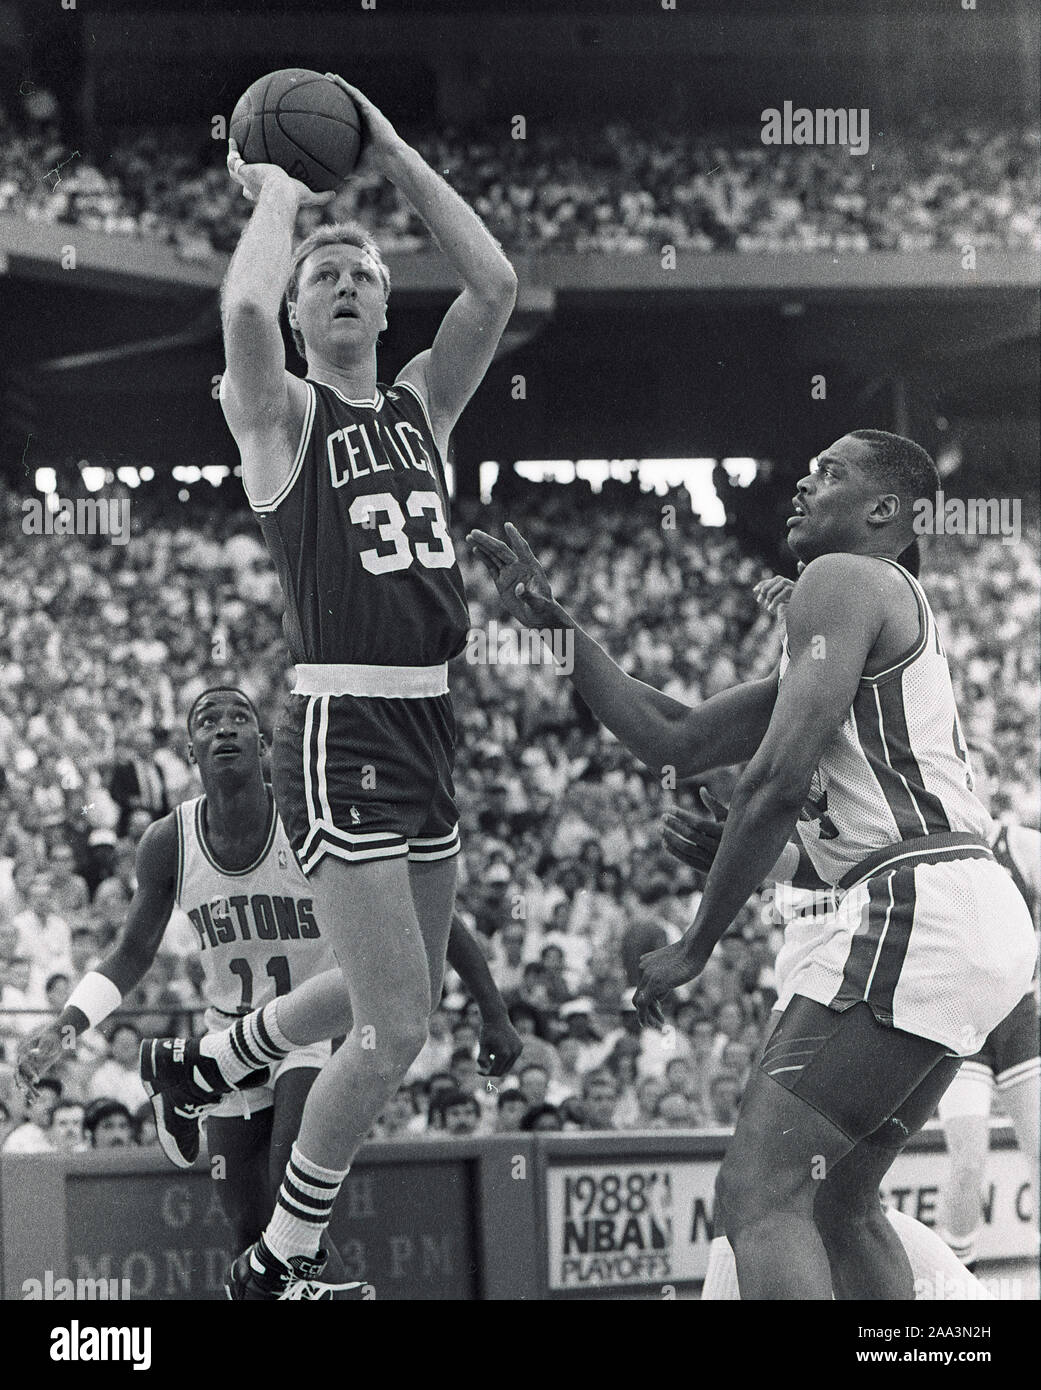 Boston Celtics #33 Larry Bird schießt Vergangenheit Detroit Pistons Isiah Thomas und Rick Mahorn in ame Maßnahmen während der 1988 NBA Endspiele in Detroit, Michigan USA Foto, Mai 1988 von Bill belknap Stockfoto